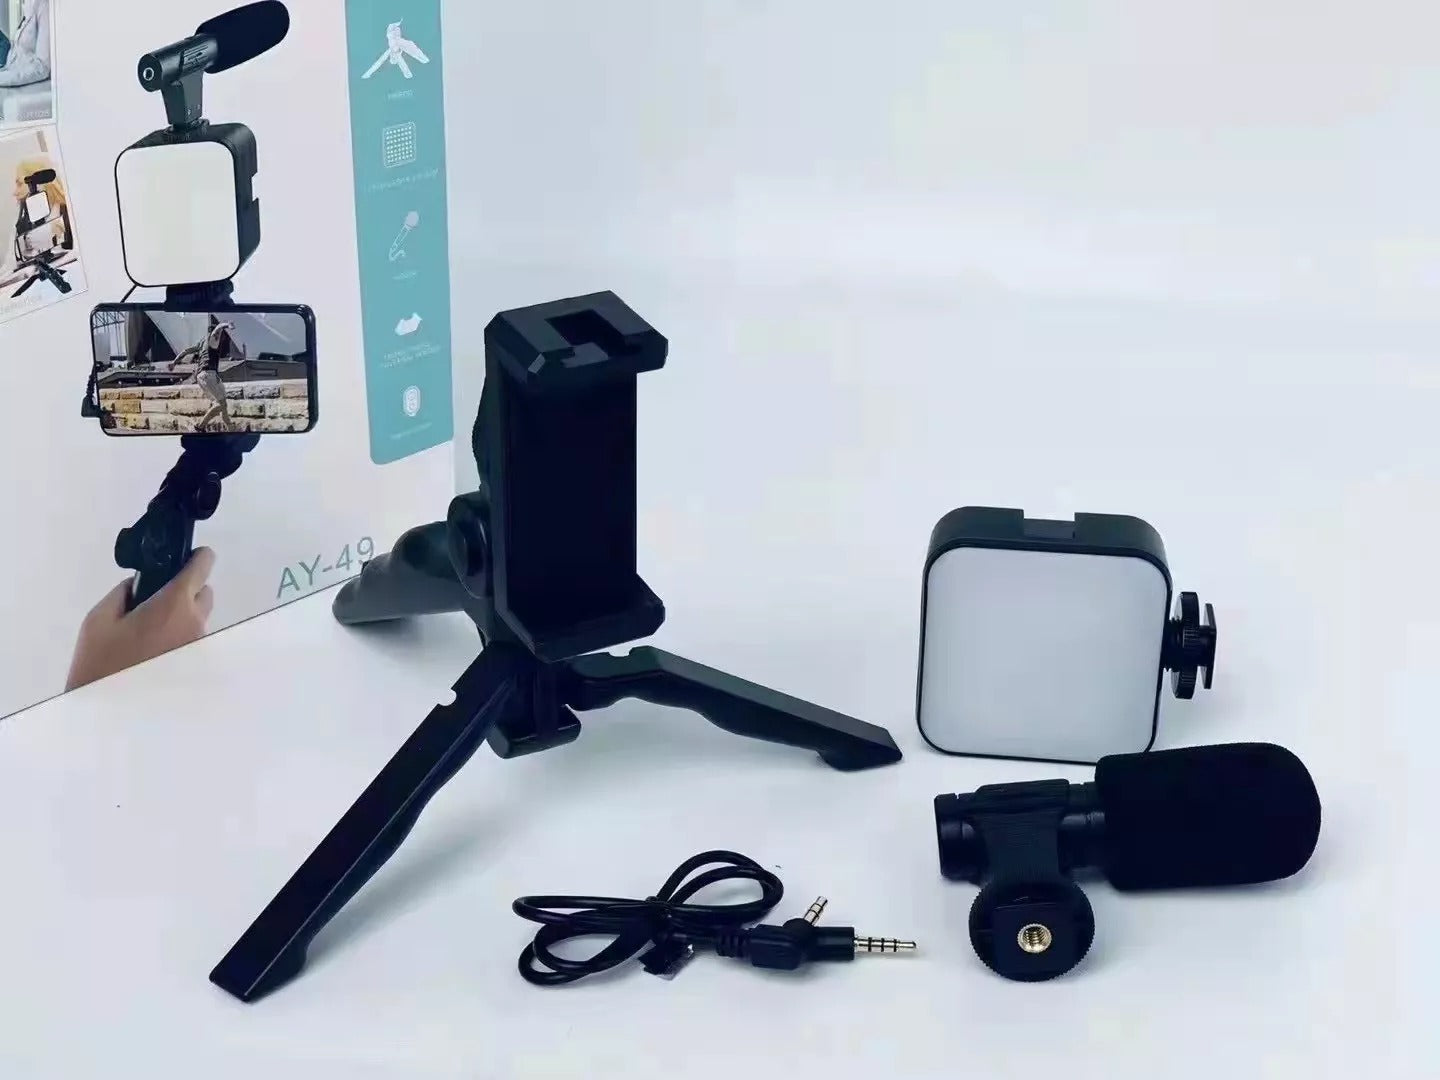 AY-49 Video-Making Kit Vlogging Tripod